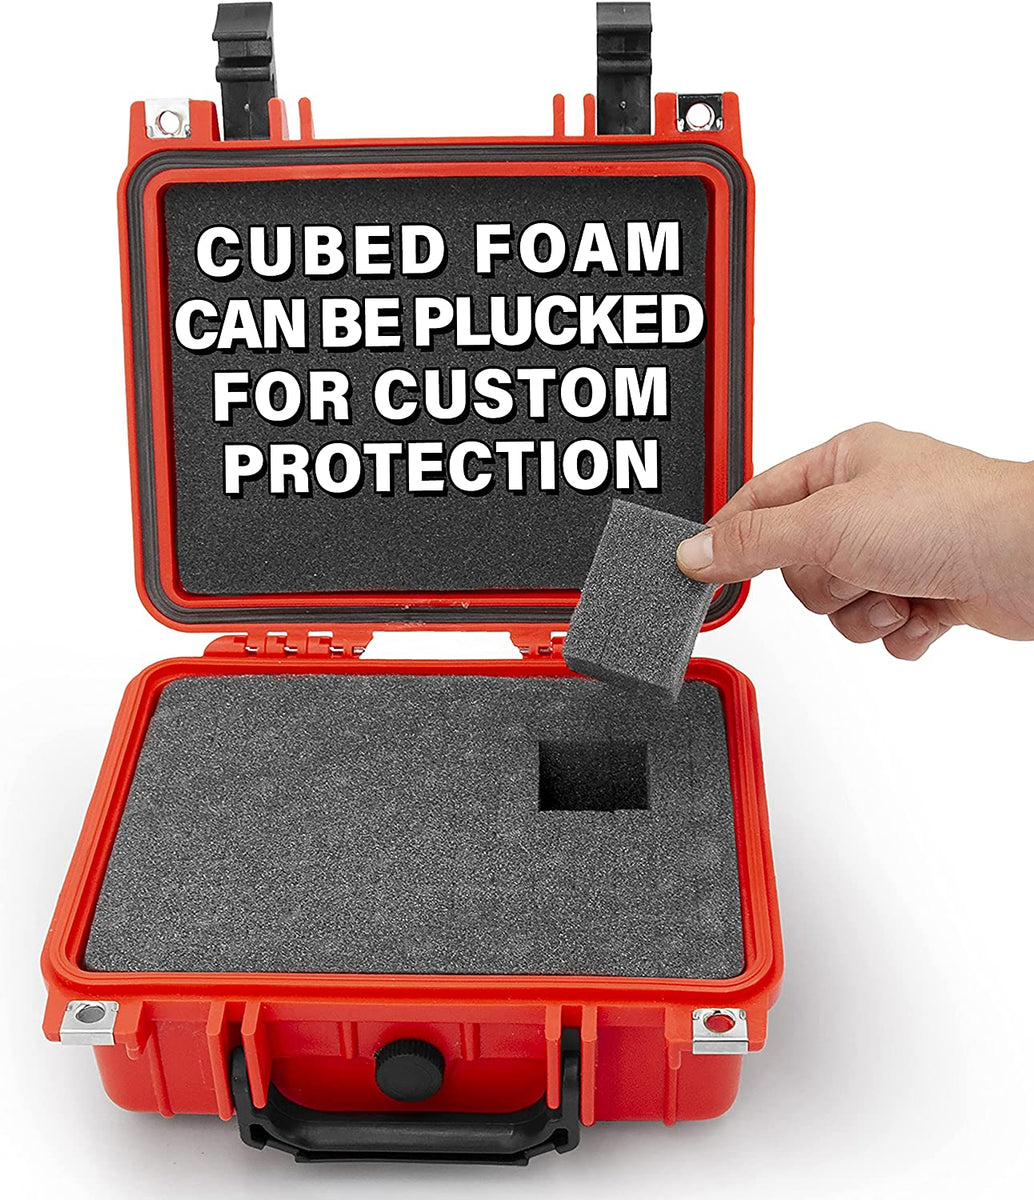 CASEMATIX Medicine Lock Box Case with Customizable Foam - Lockable